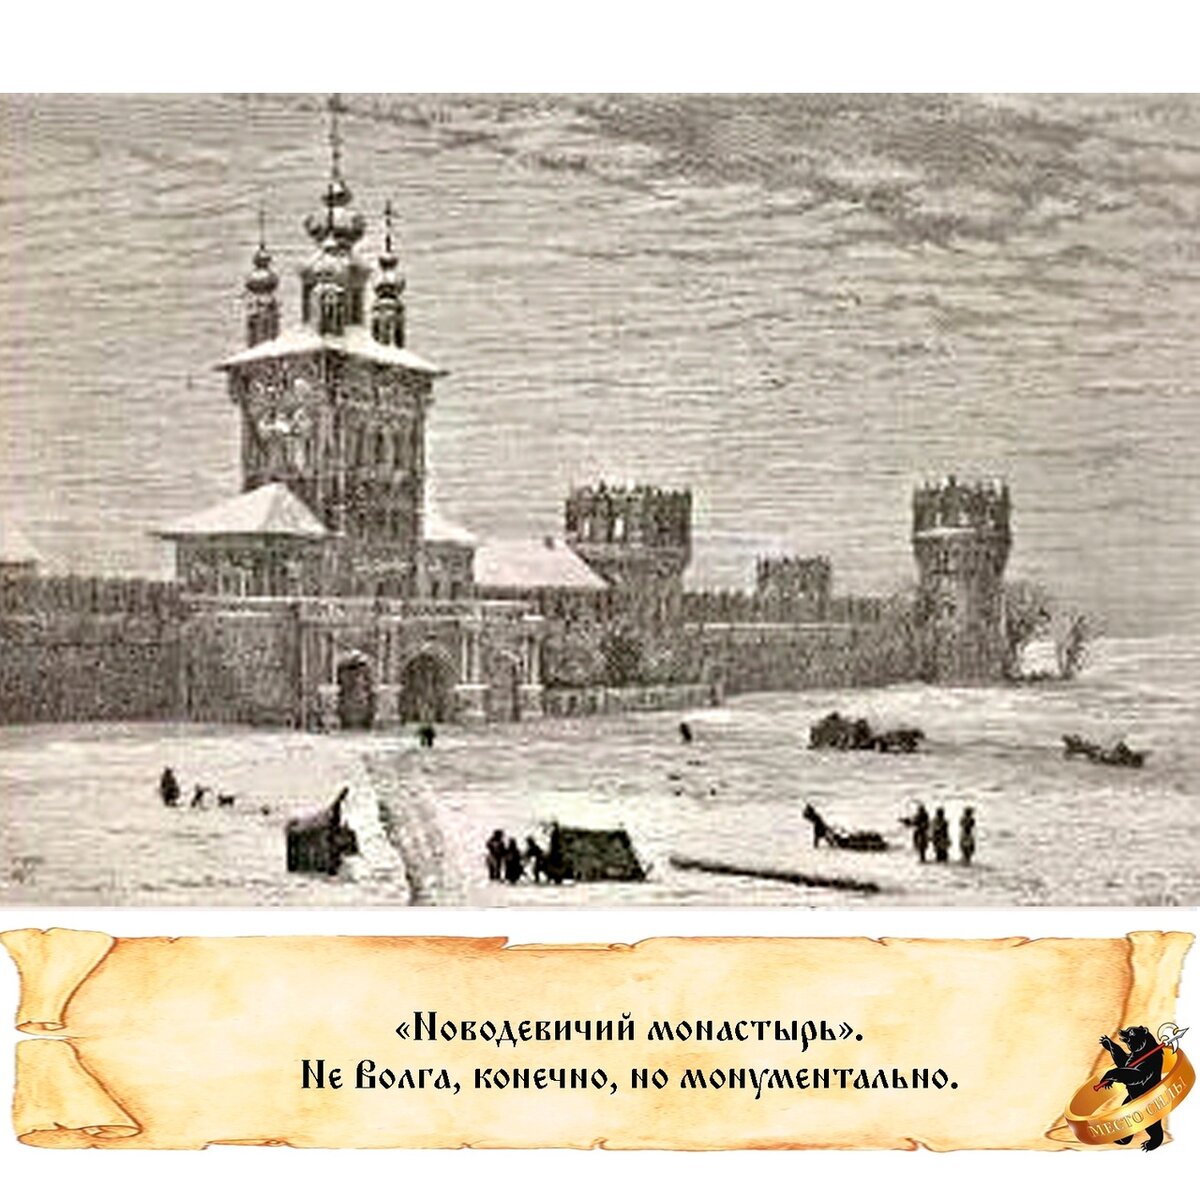 Вы знаете, откуда пошло выражение "развесистая клюква"? Благодаря отцу нашему Александру Дюма.  В 1858-1859 годах знаменитый писатель путешествовал по России.-2